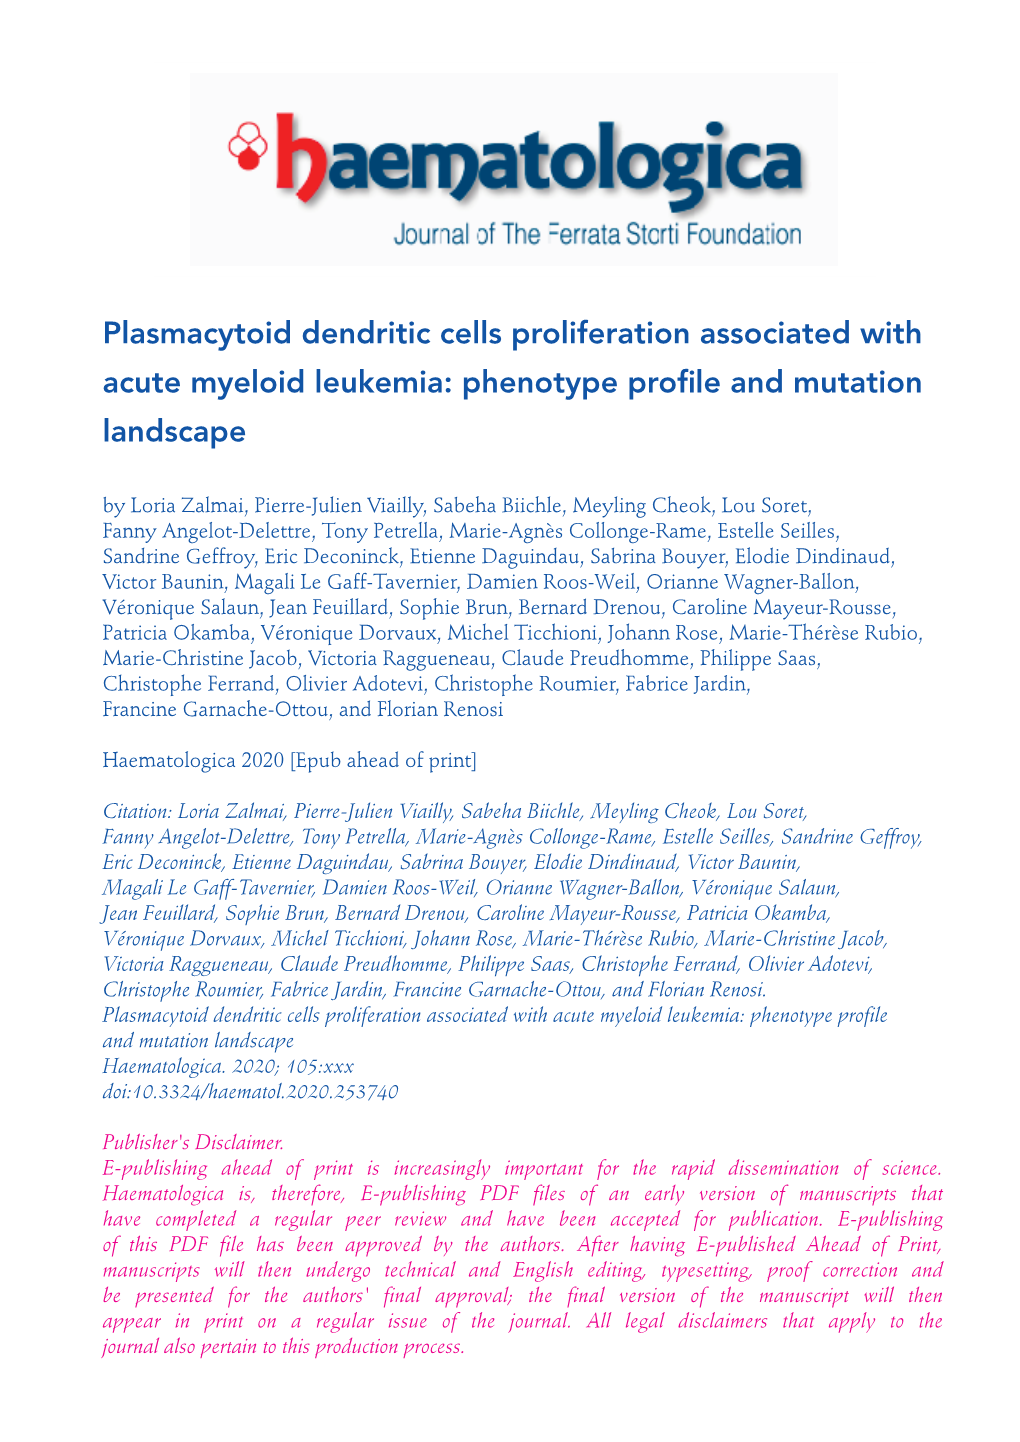 Plasmacytoid Dendritic Cells Proliferation